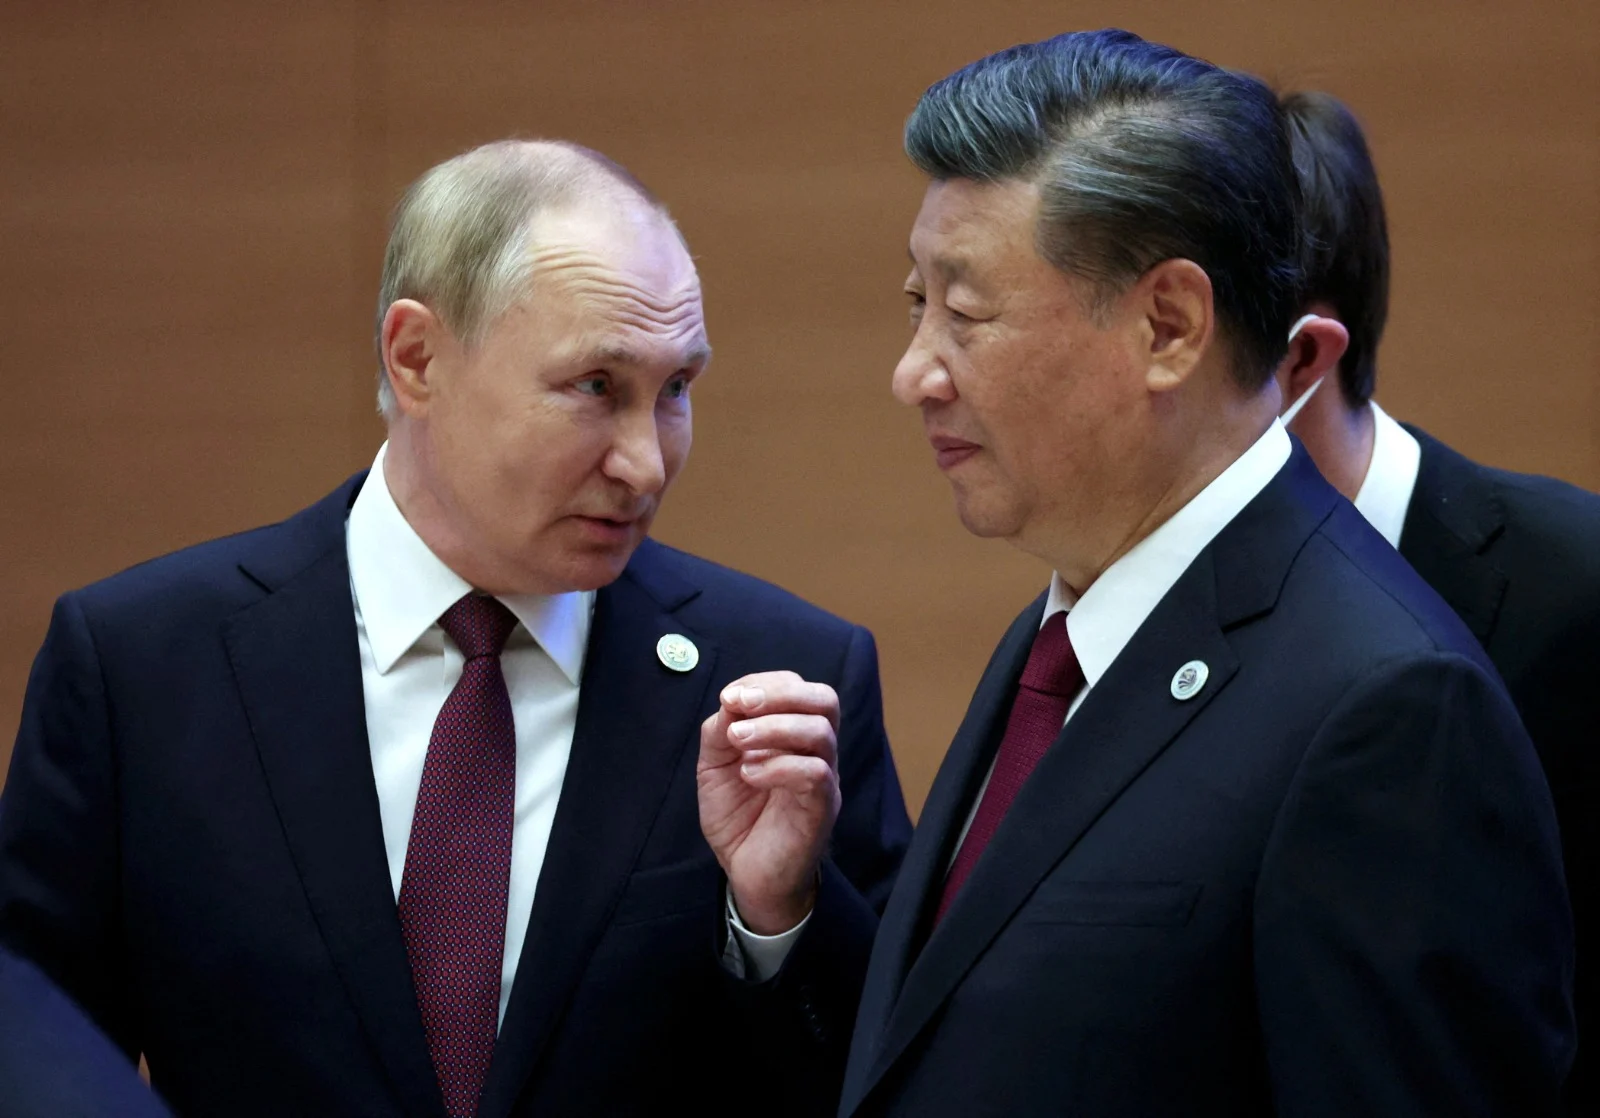 נשיא סין שי ג'ינגפינג יחד עם נשיא רוסיה ולדימיר פוטין בפסגה בסמרקנד. הפעם האחרונה בה נראה הנשיא בציבור